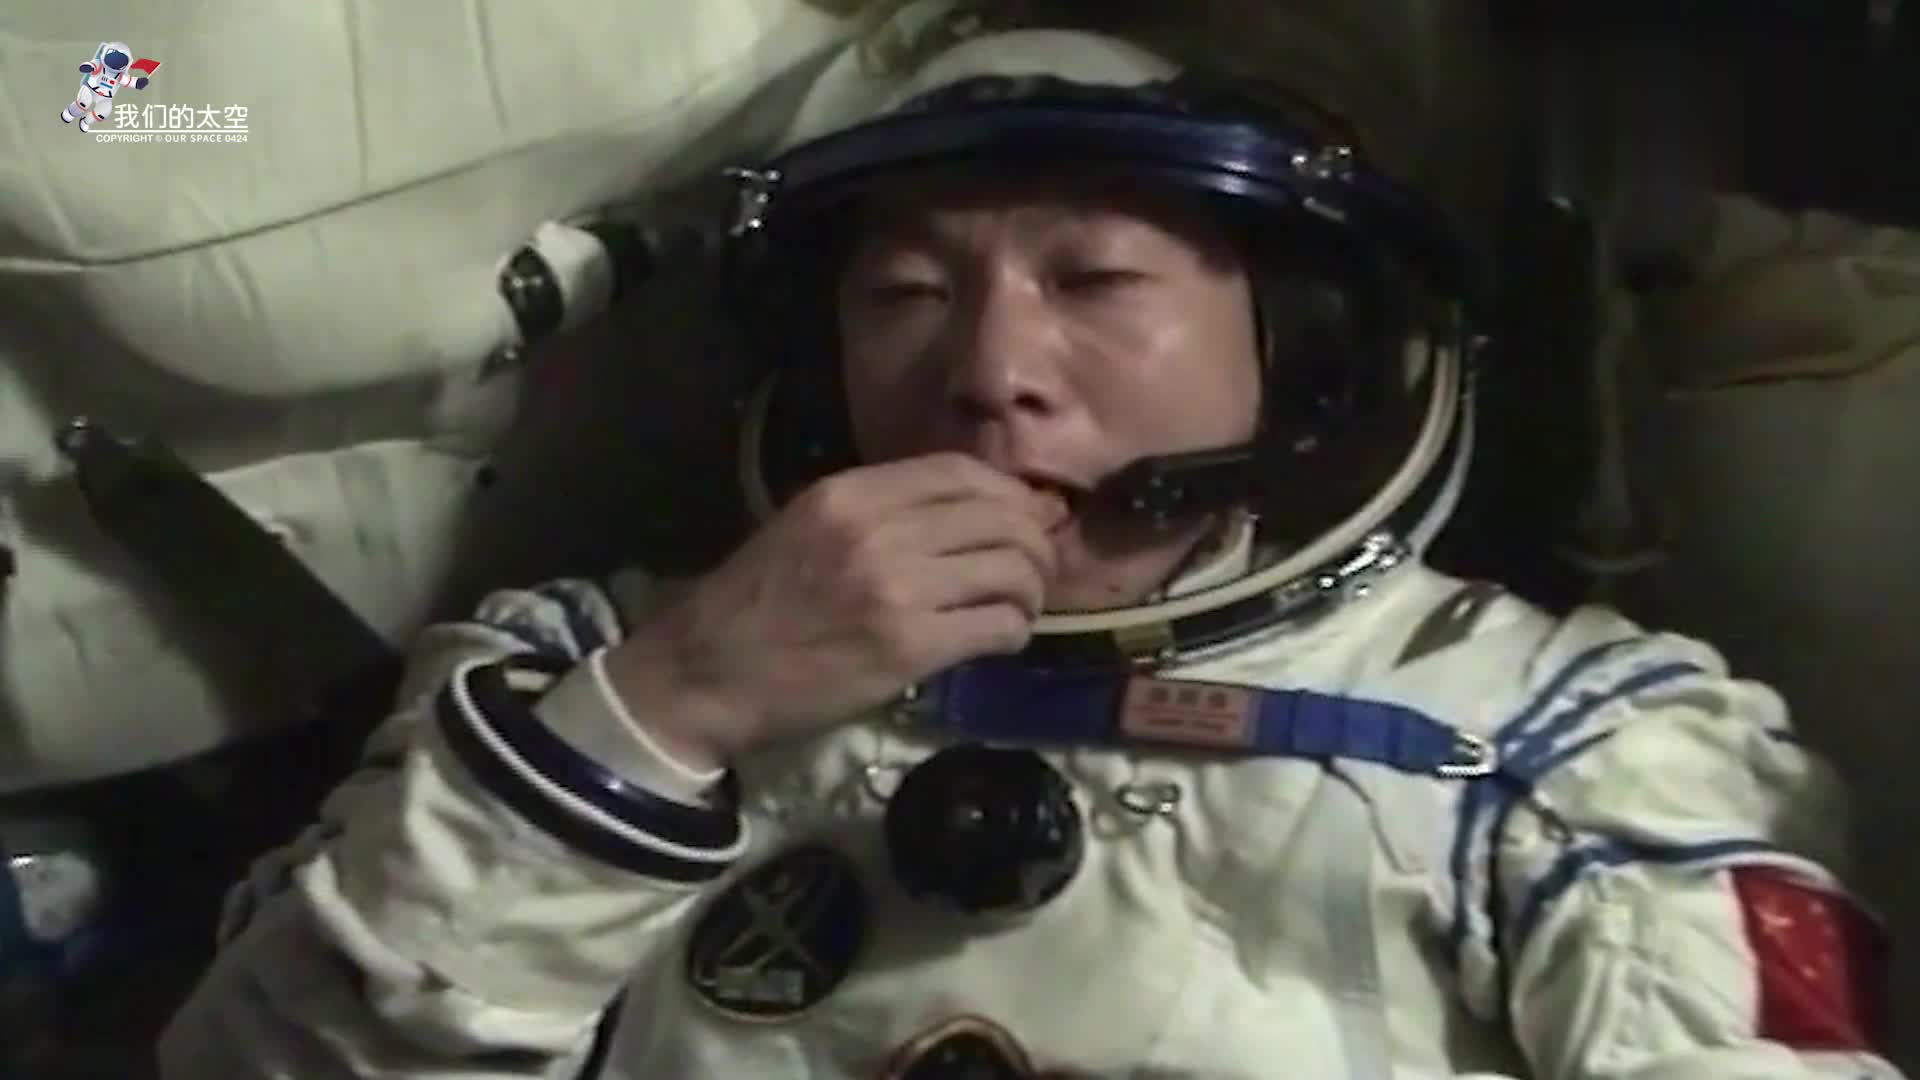 国际空间站食物摄入追踪APP为空间站航天员记录饮食与健康----中国科学院太空应用重点实验室